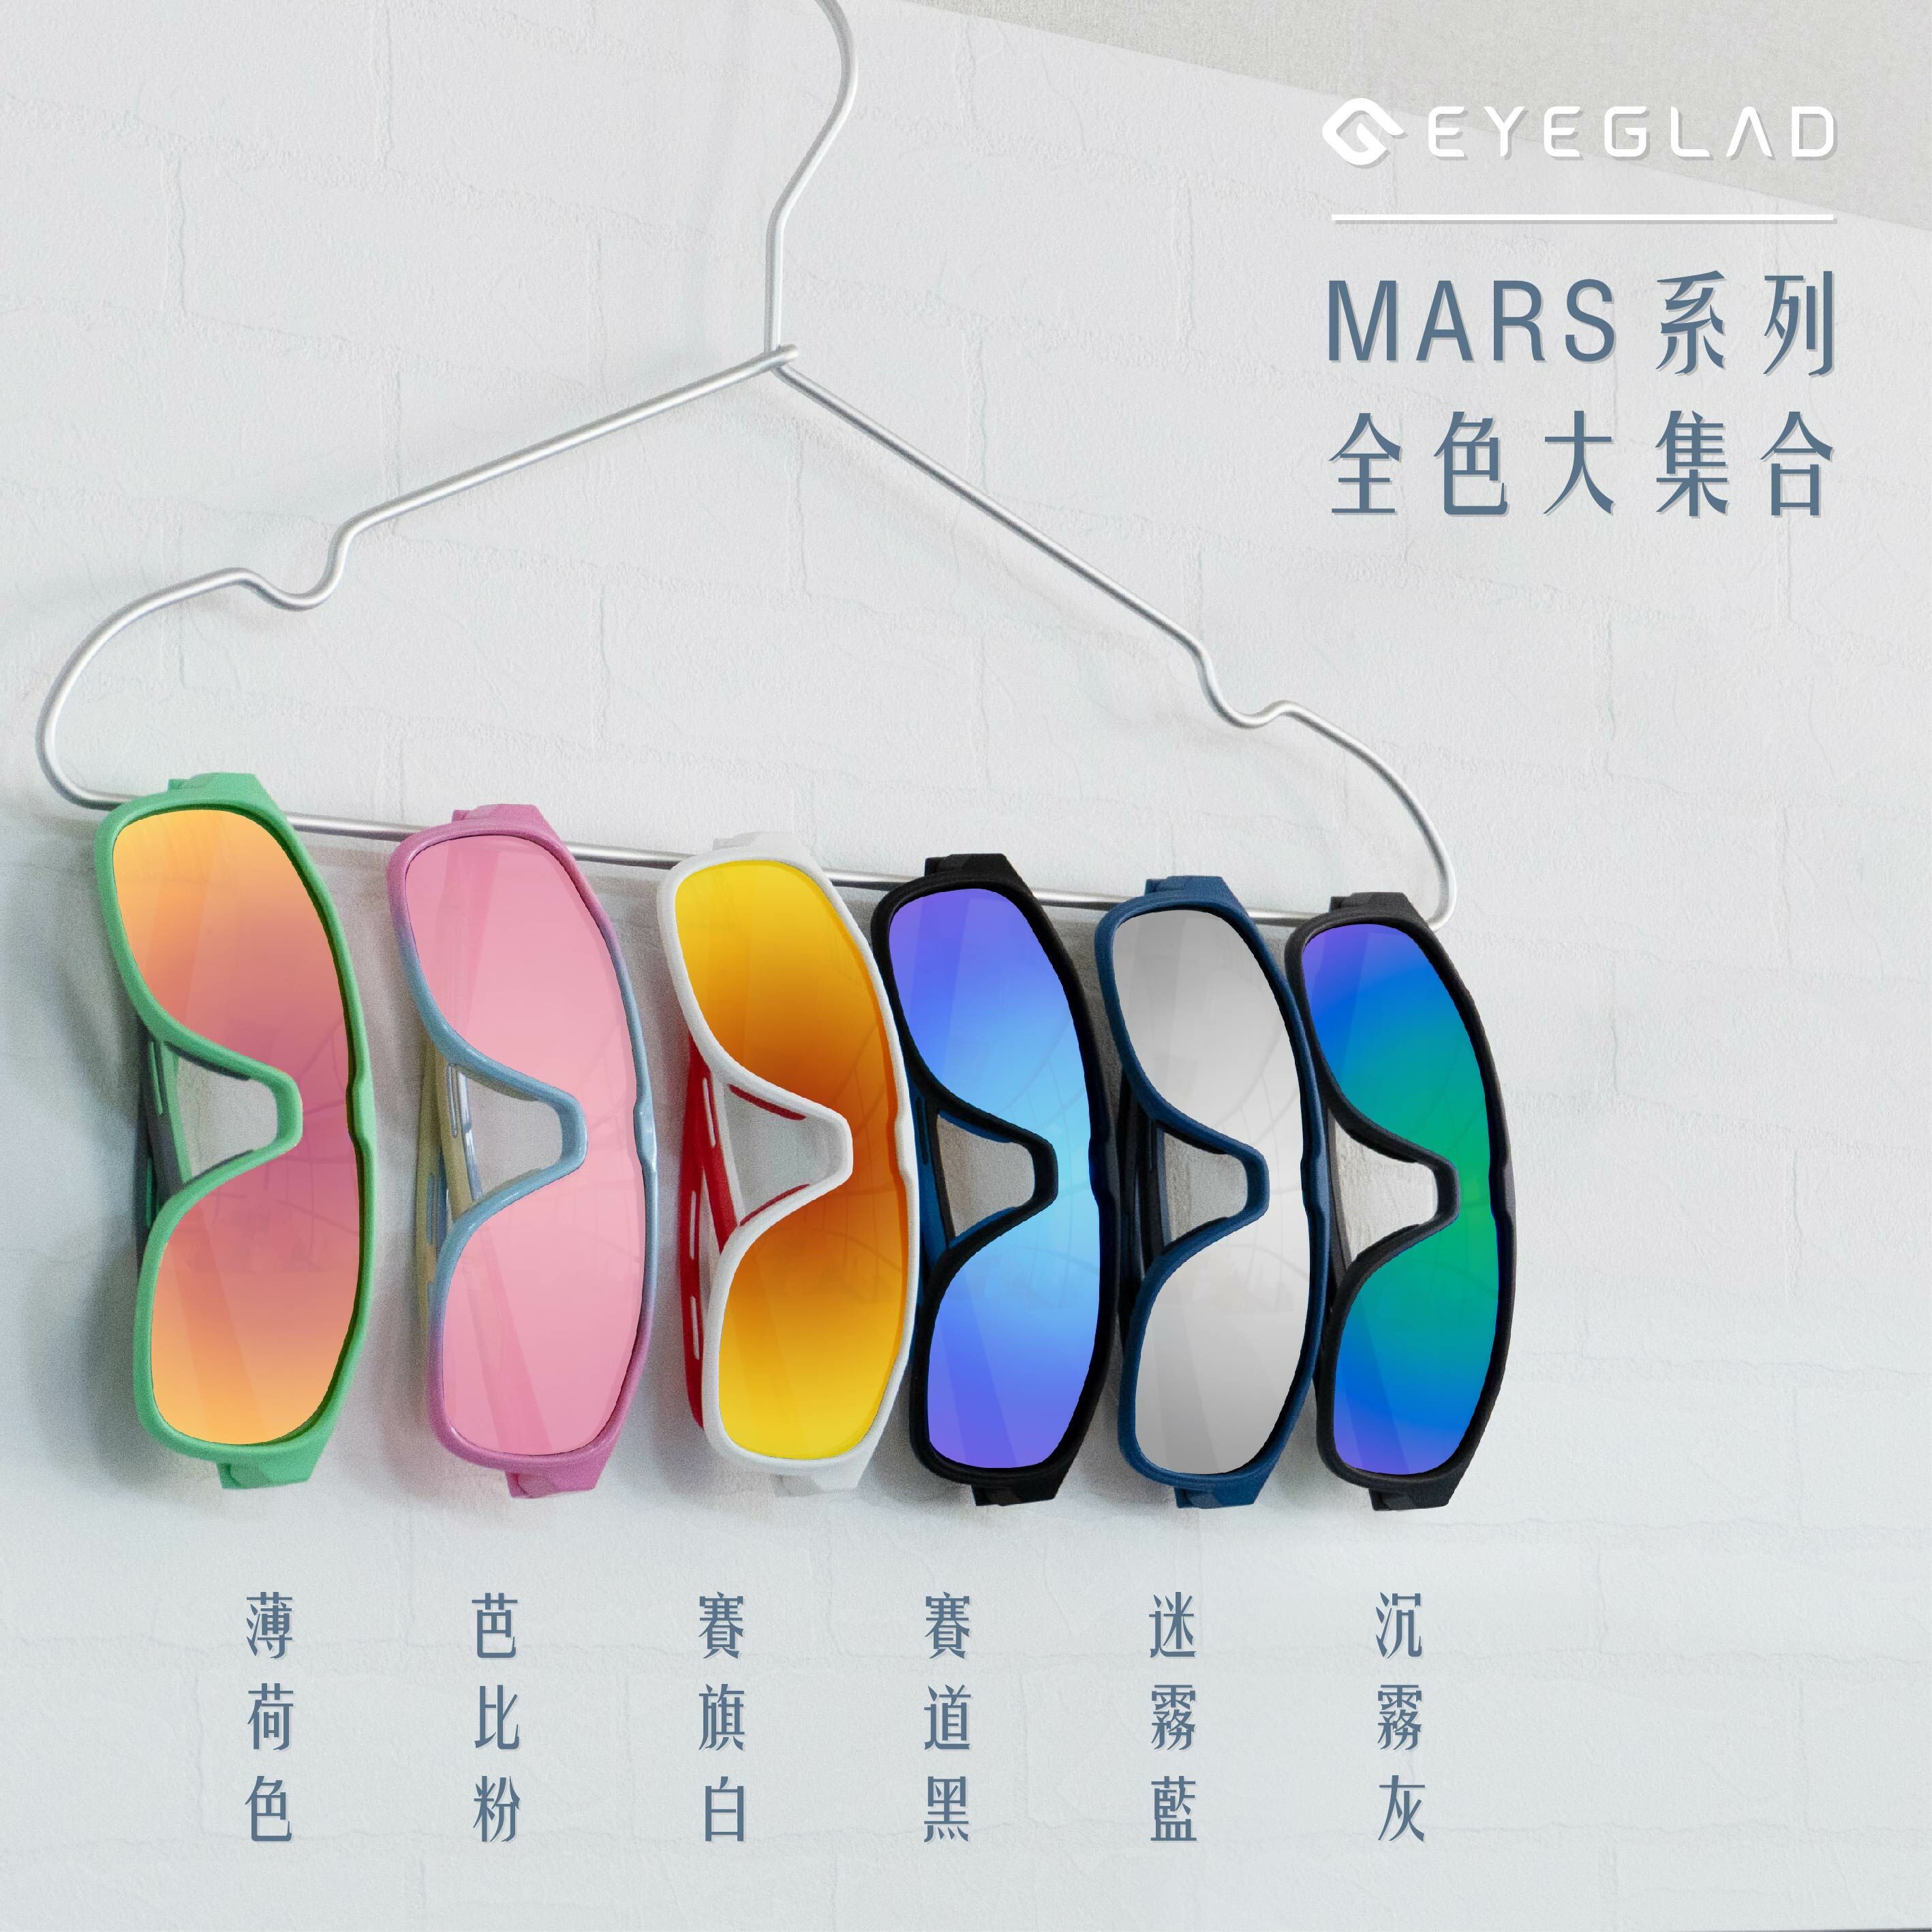 運動休閒眼鏡Mars全色系列，多種風格一次滿足